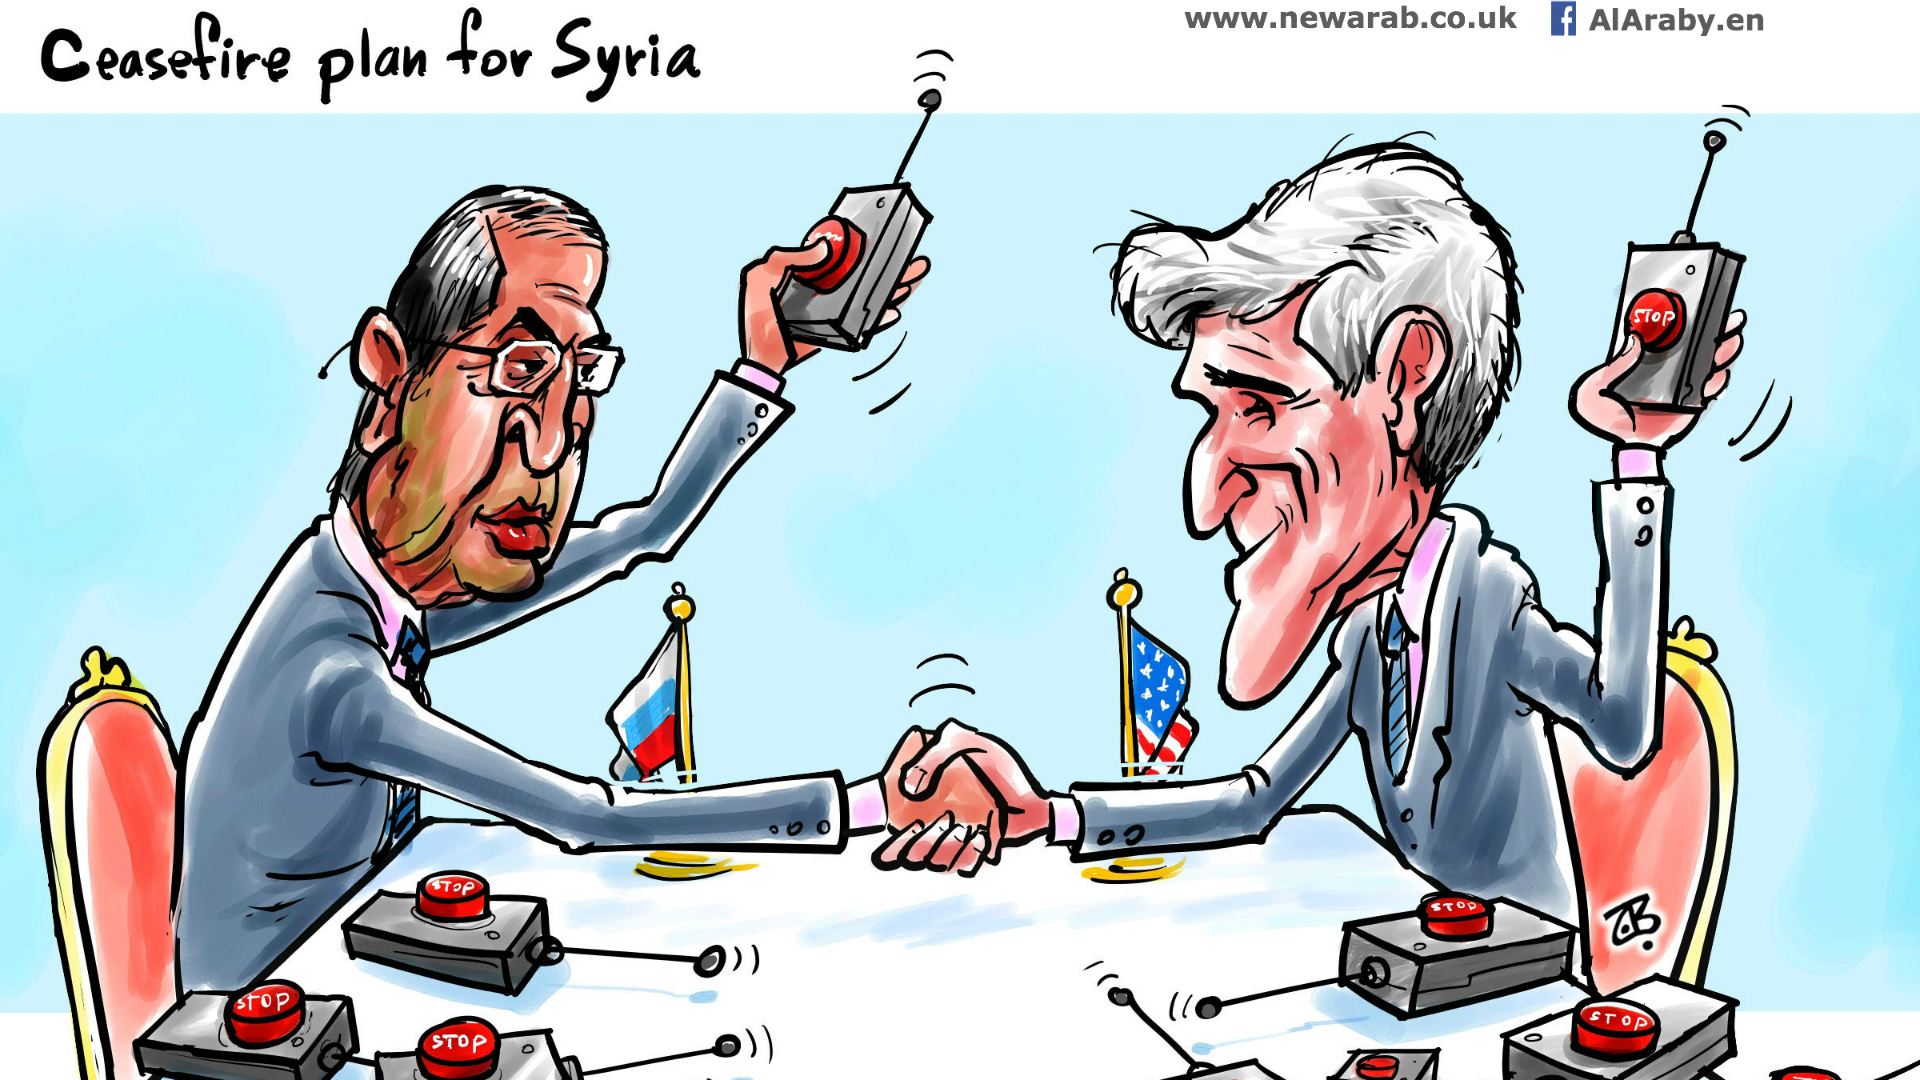 Cartoon ceasefire plan for Syria 25-02-2016.jpg